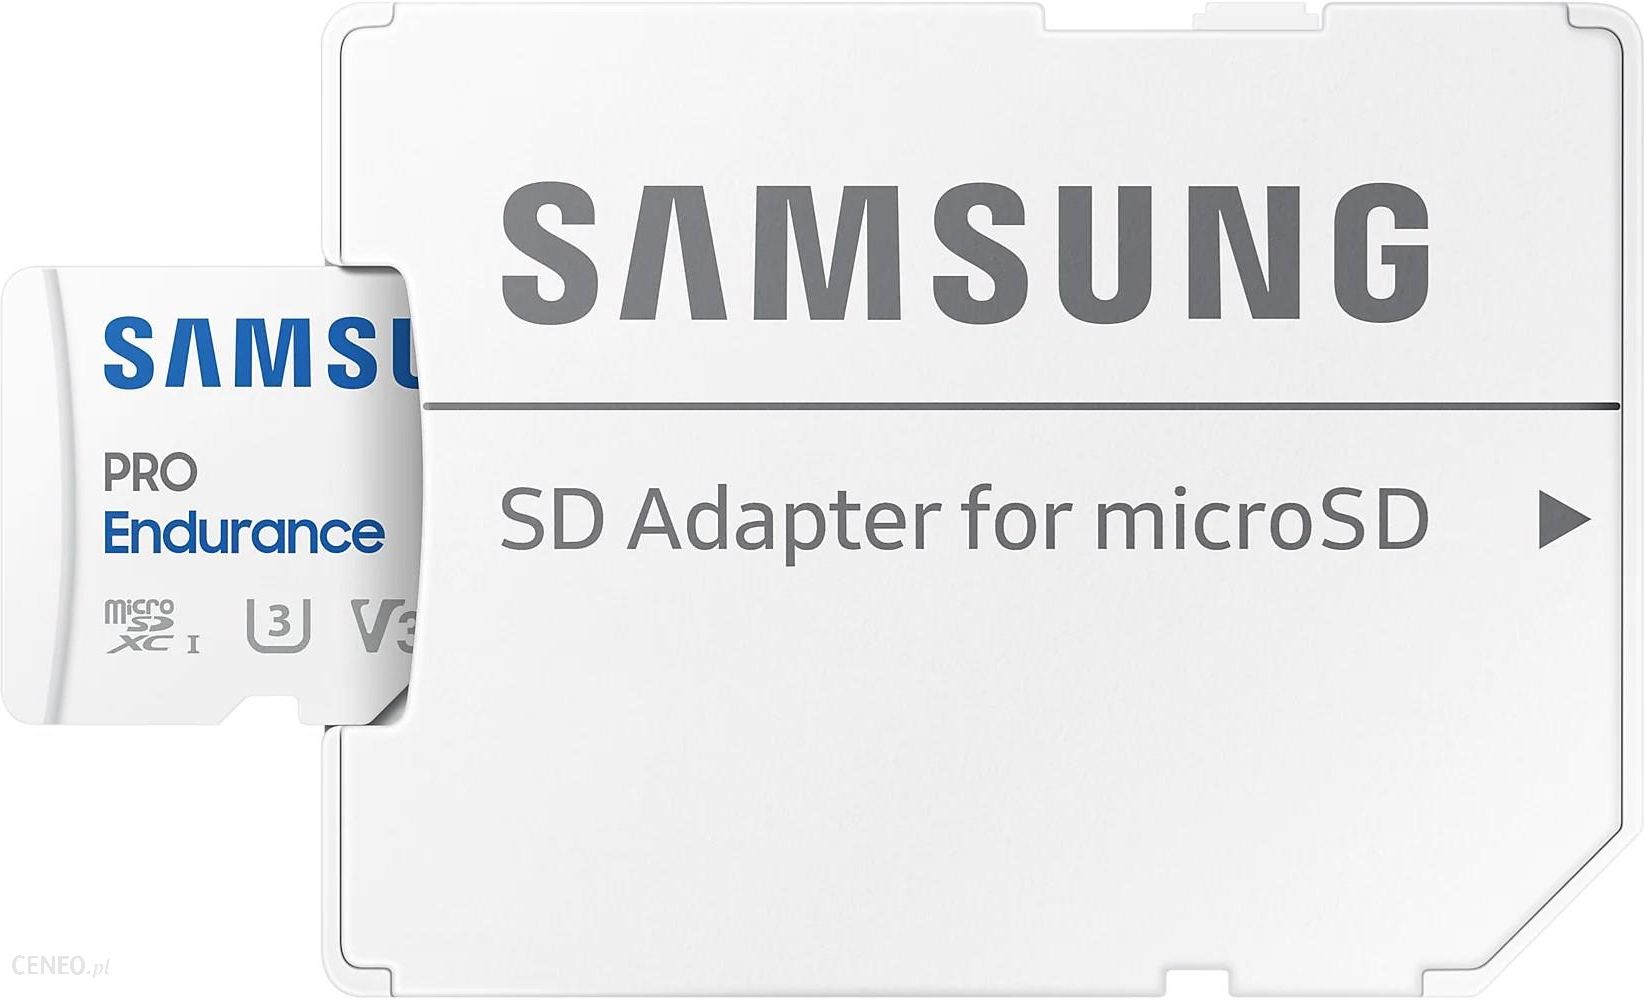 Samsung PRO Endurance microSDXC 256GB (MB-MJ256KA/EU)